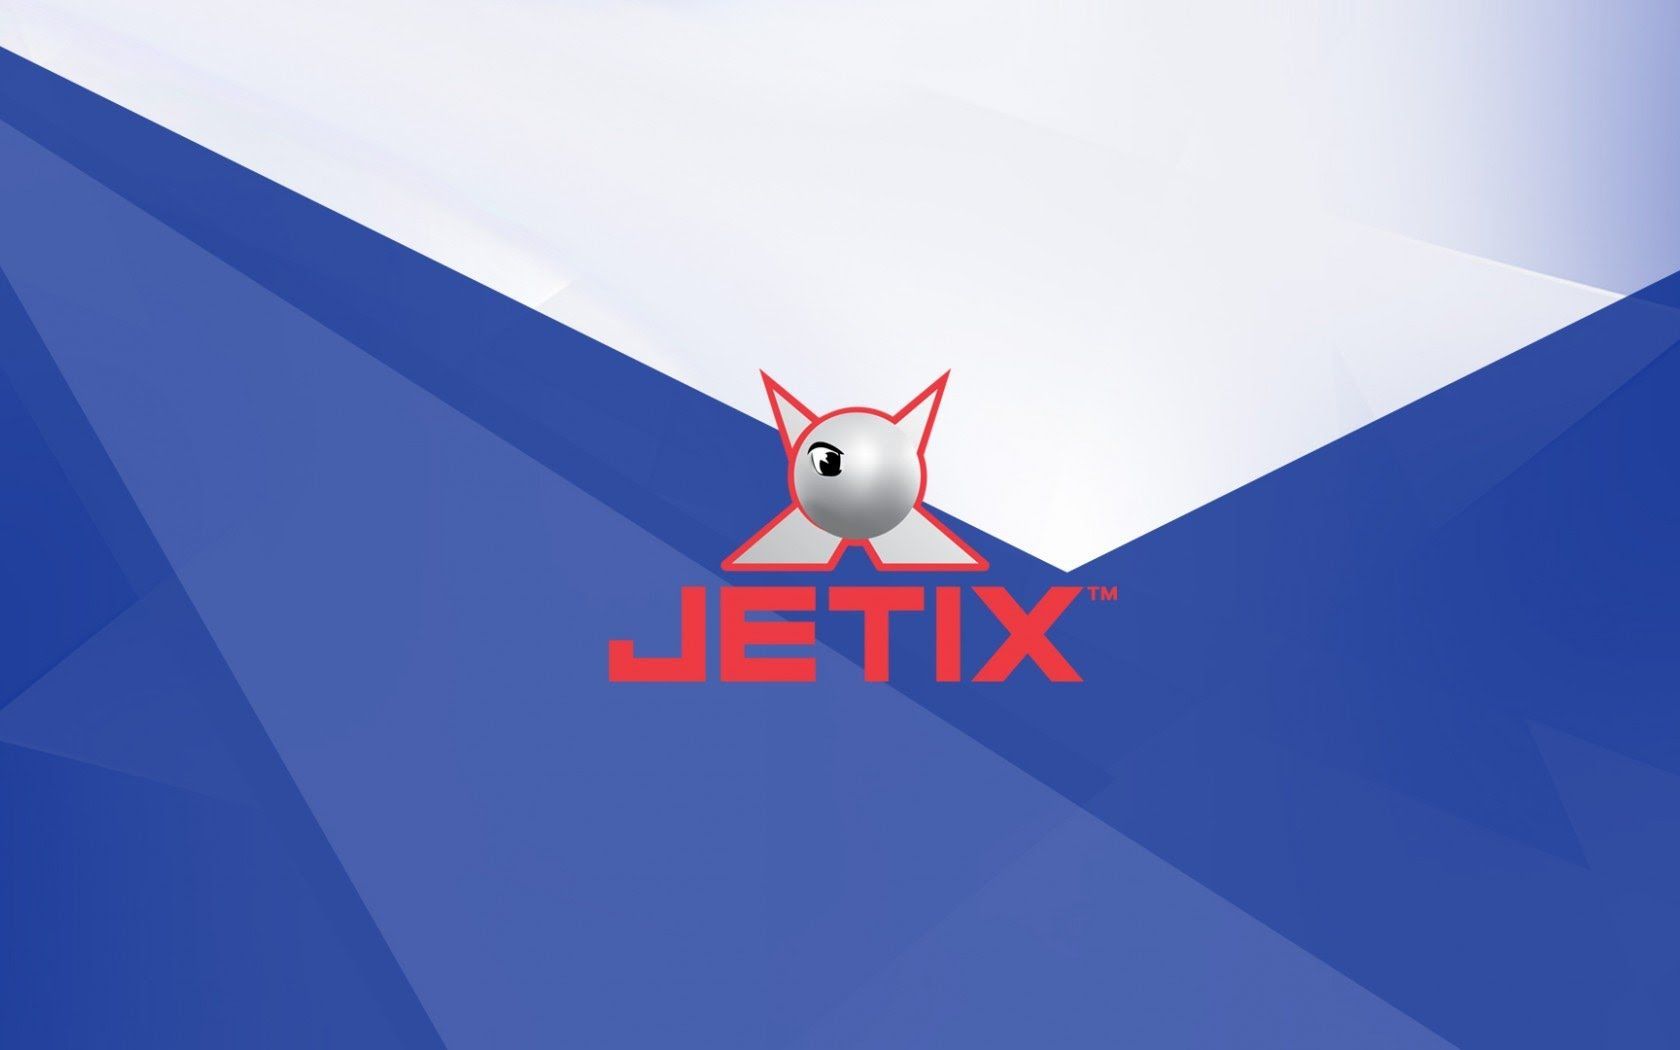 JETIX chega ao Brasil!, um novo canal de TV para crianças de 6 a 18 anos de idade